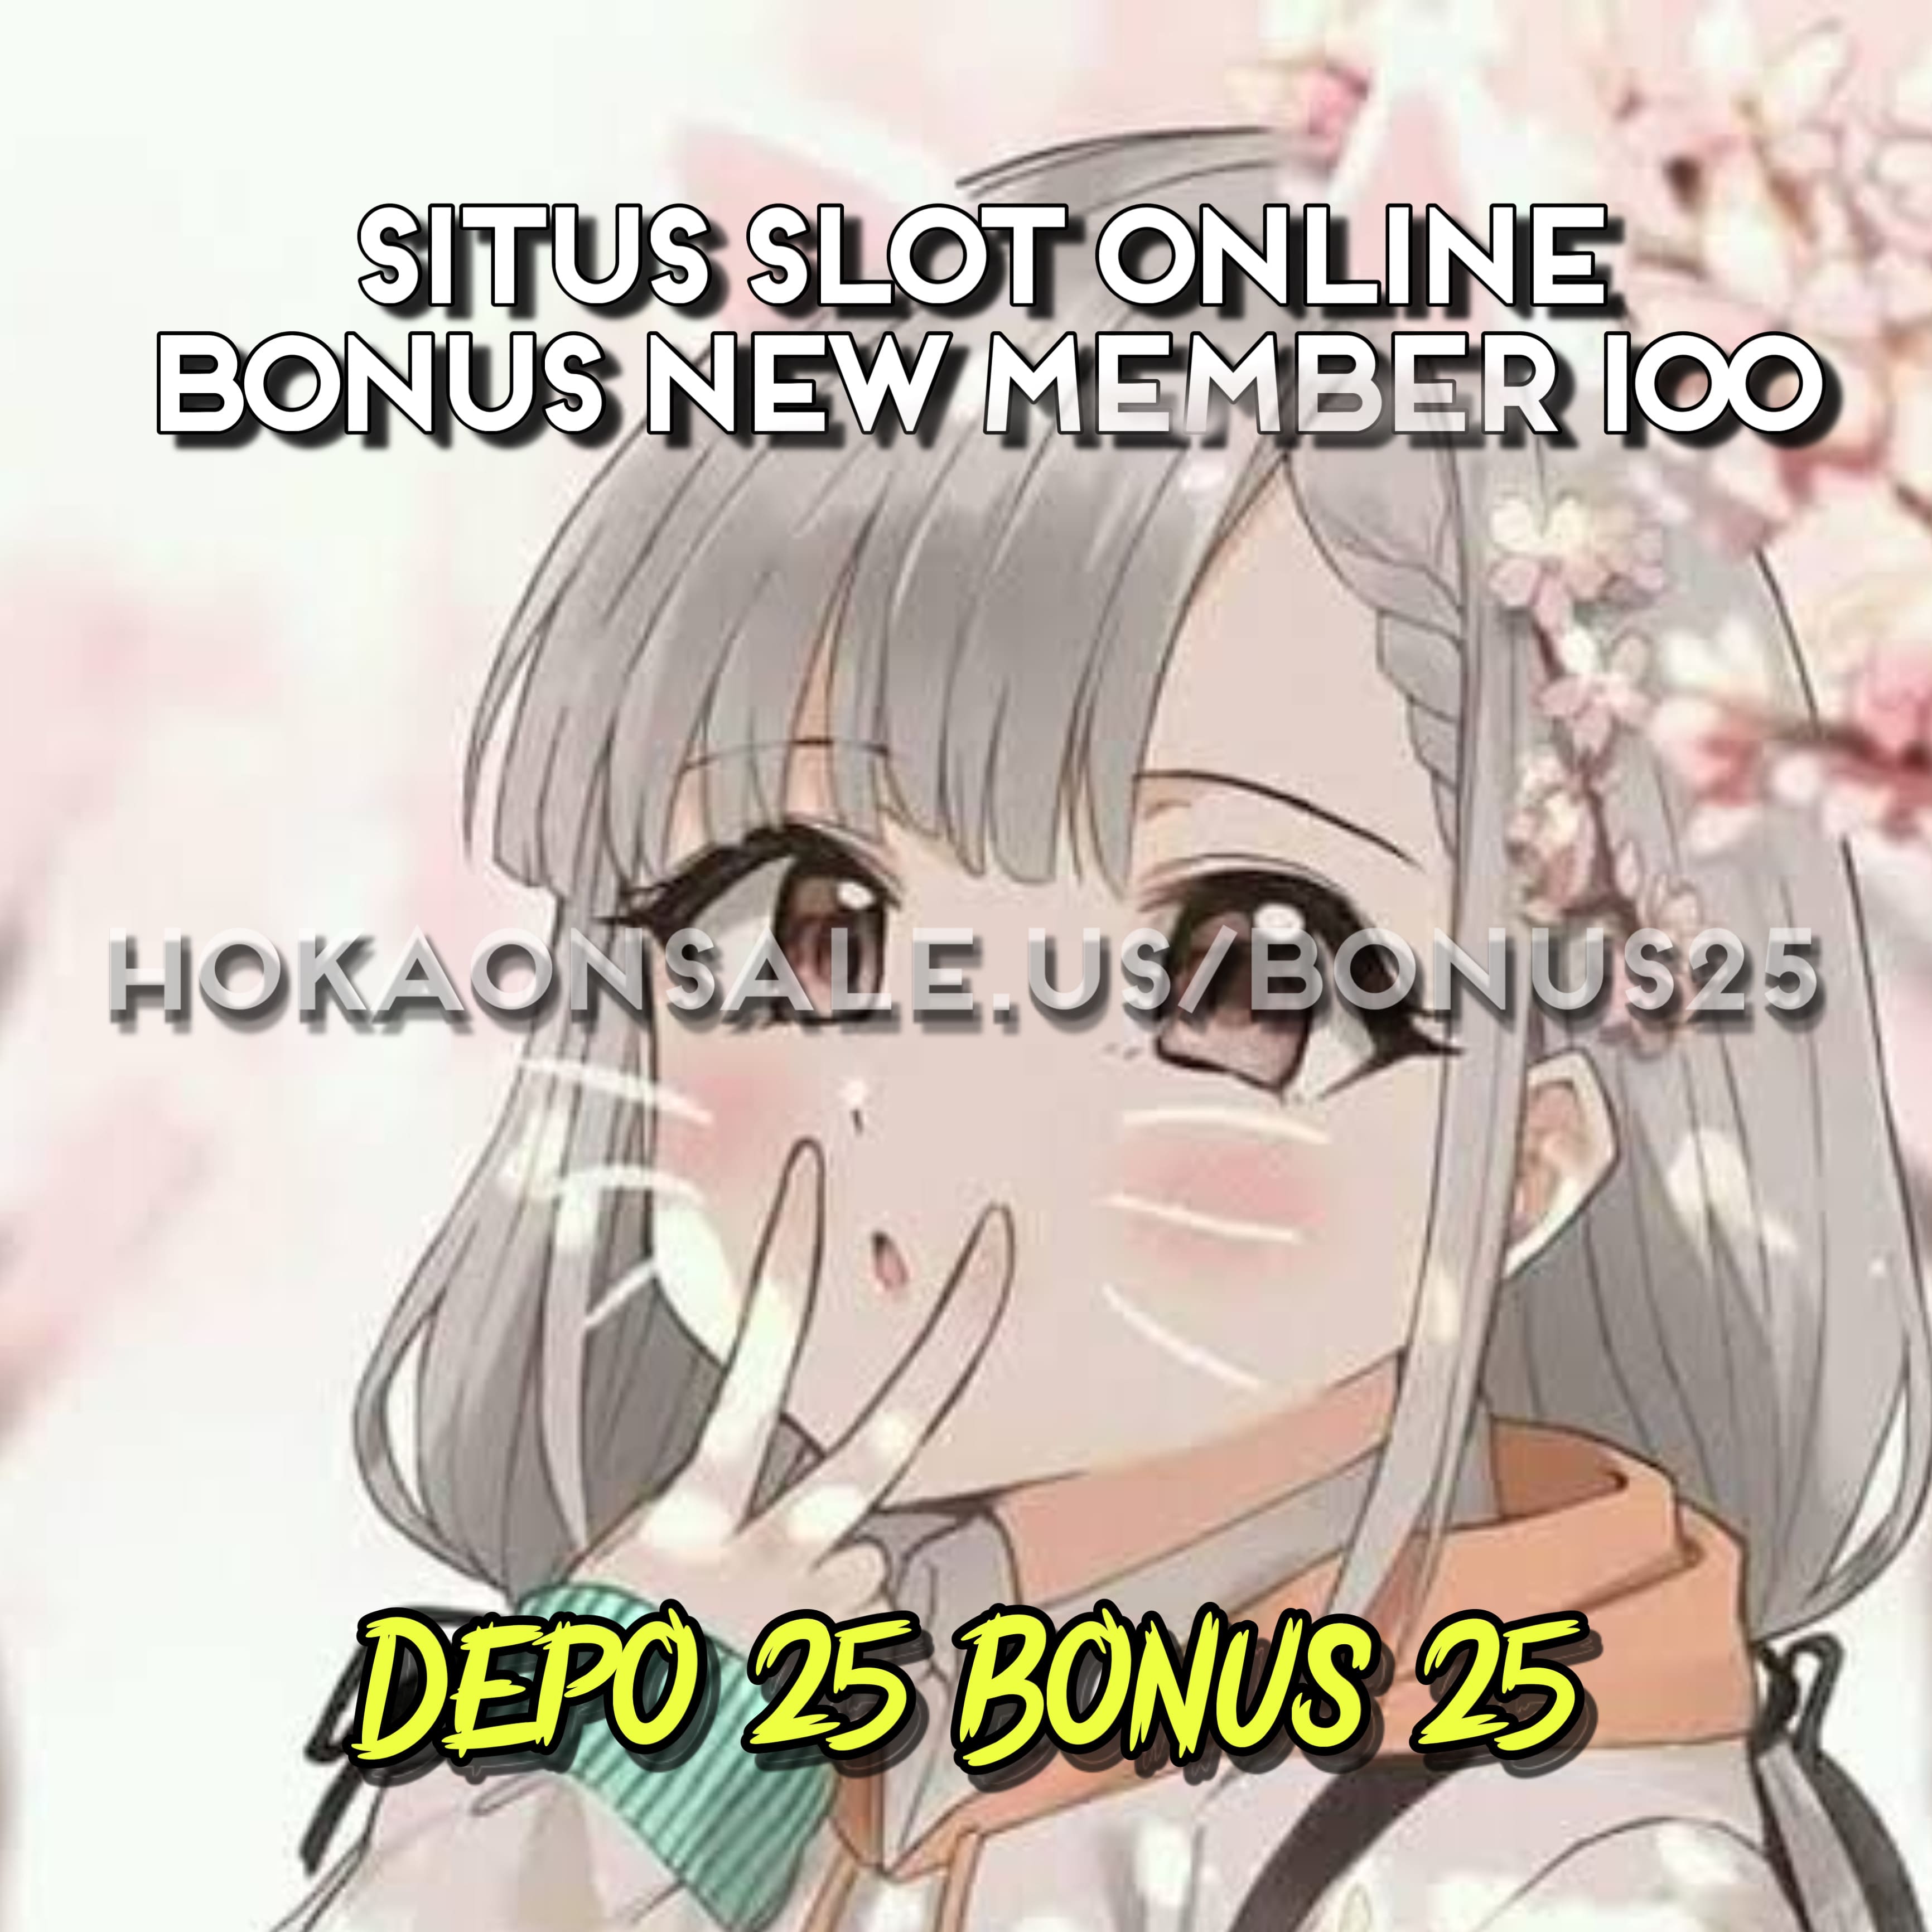 Depo 25 Bonus 25 ✧ Tambahan Saldo Bonus New Member 100 Situs Slot Ternama